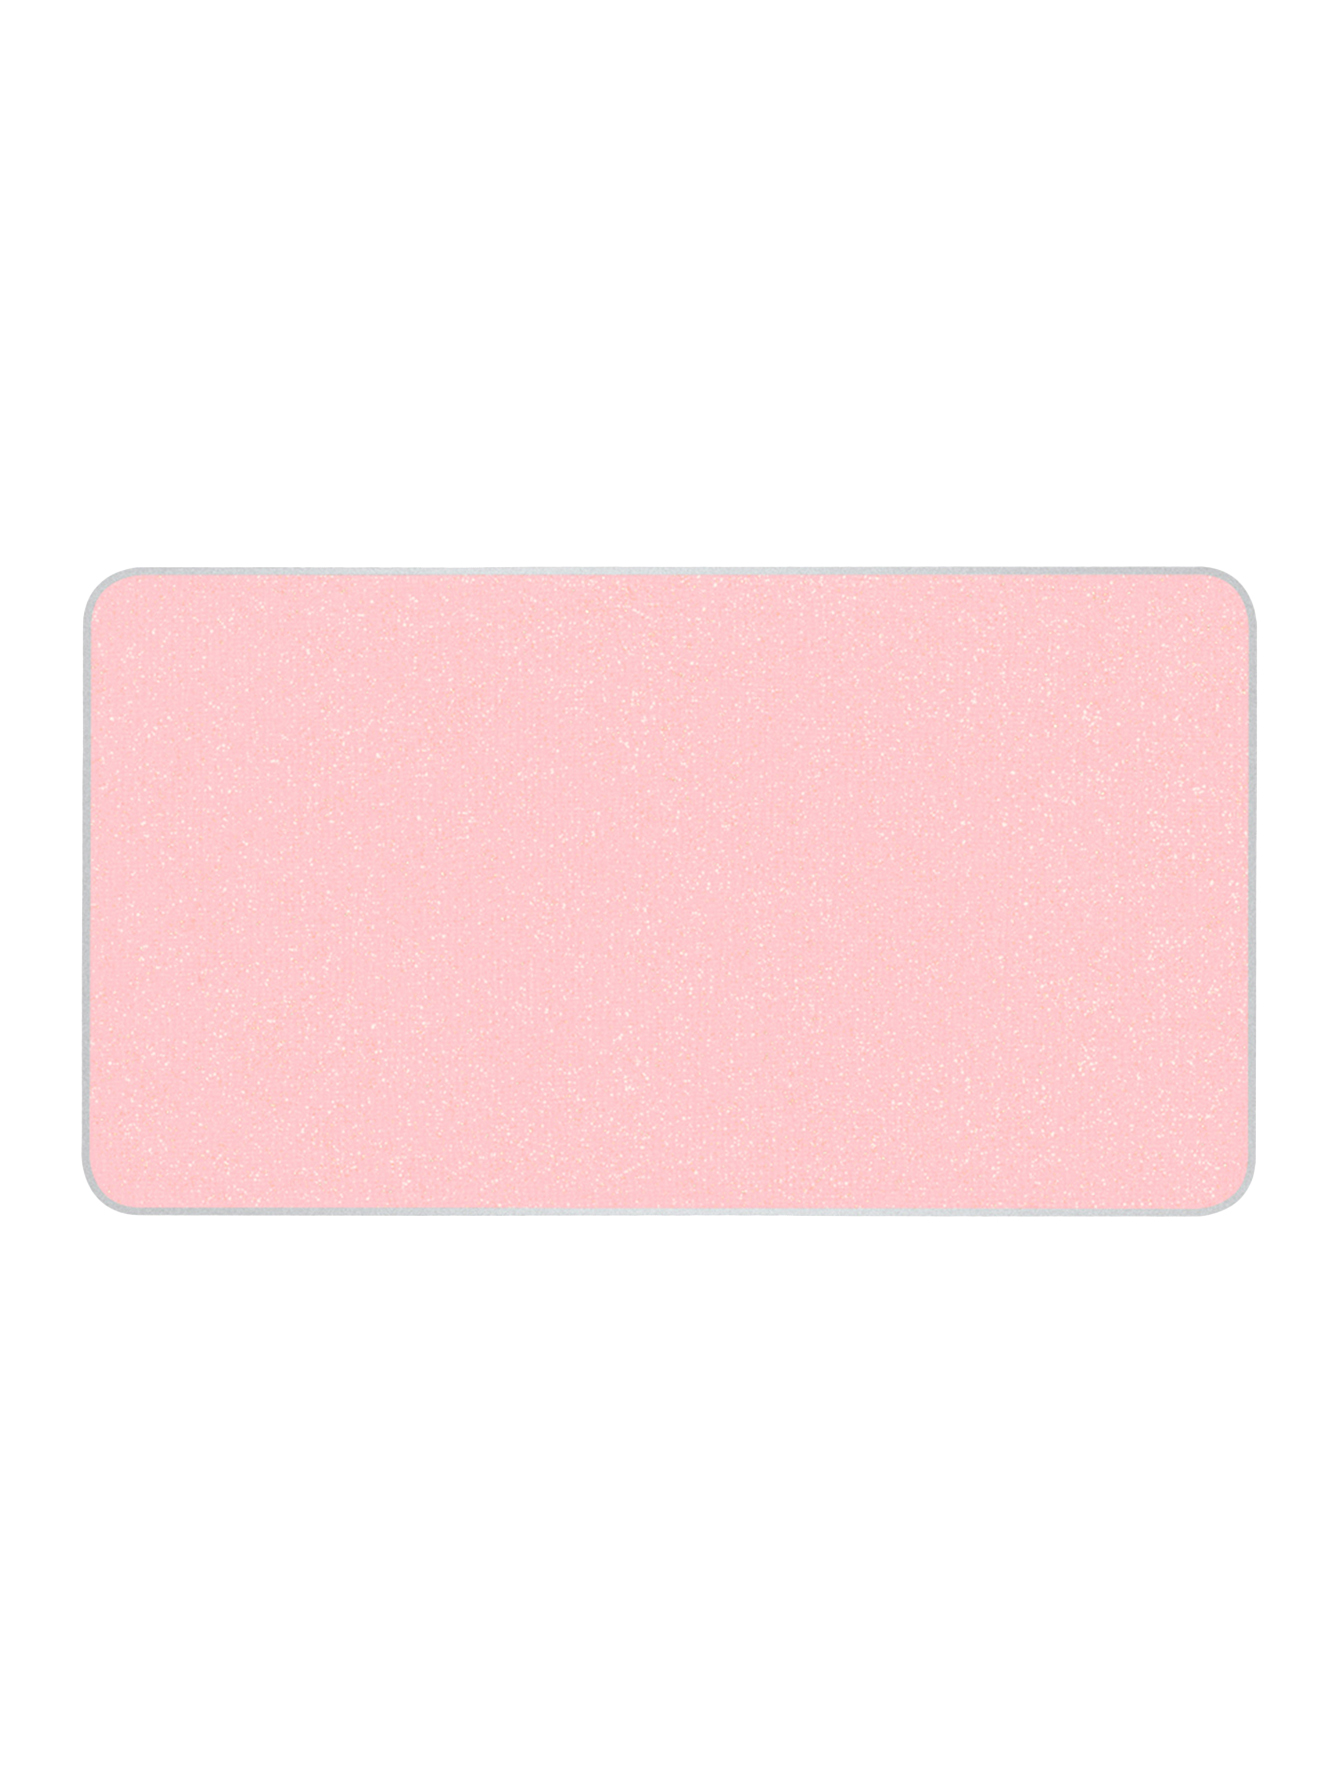 Румяна Shimmery Opal Pink Artist Face Colors - Общий вид